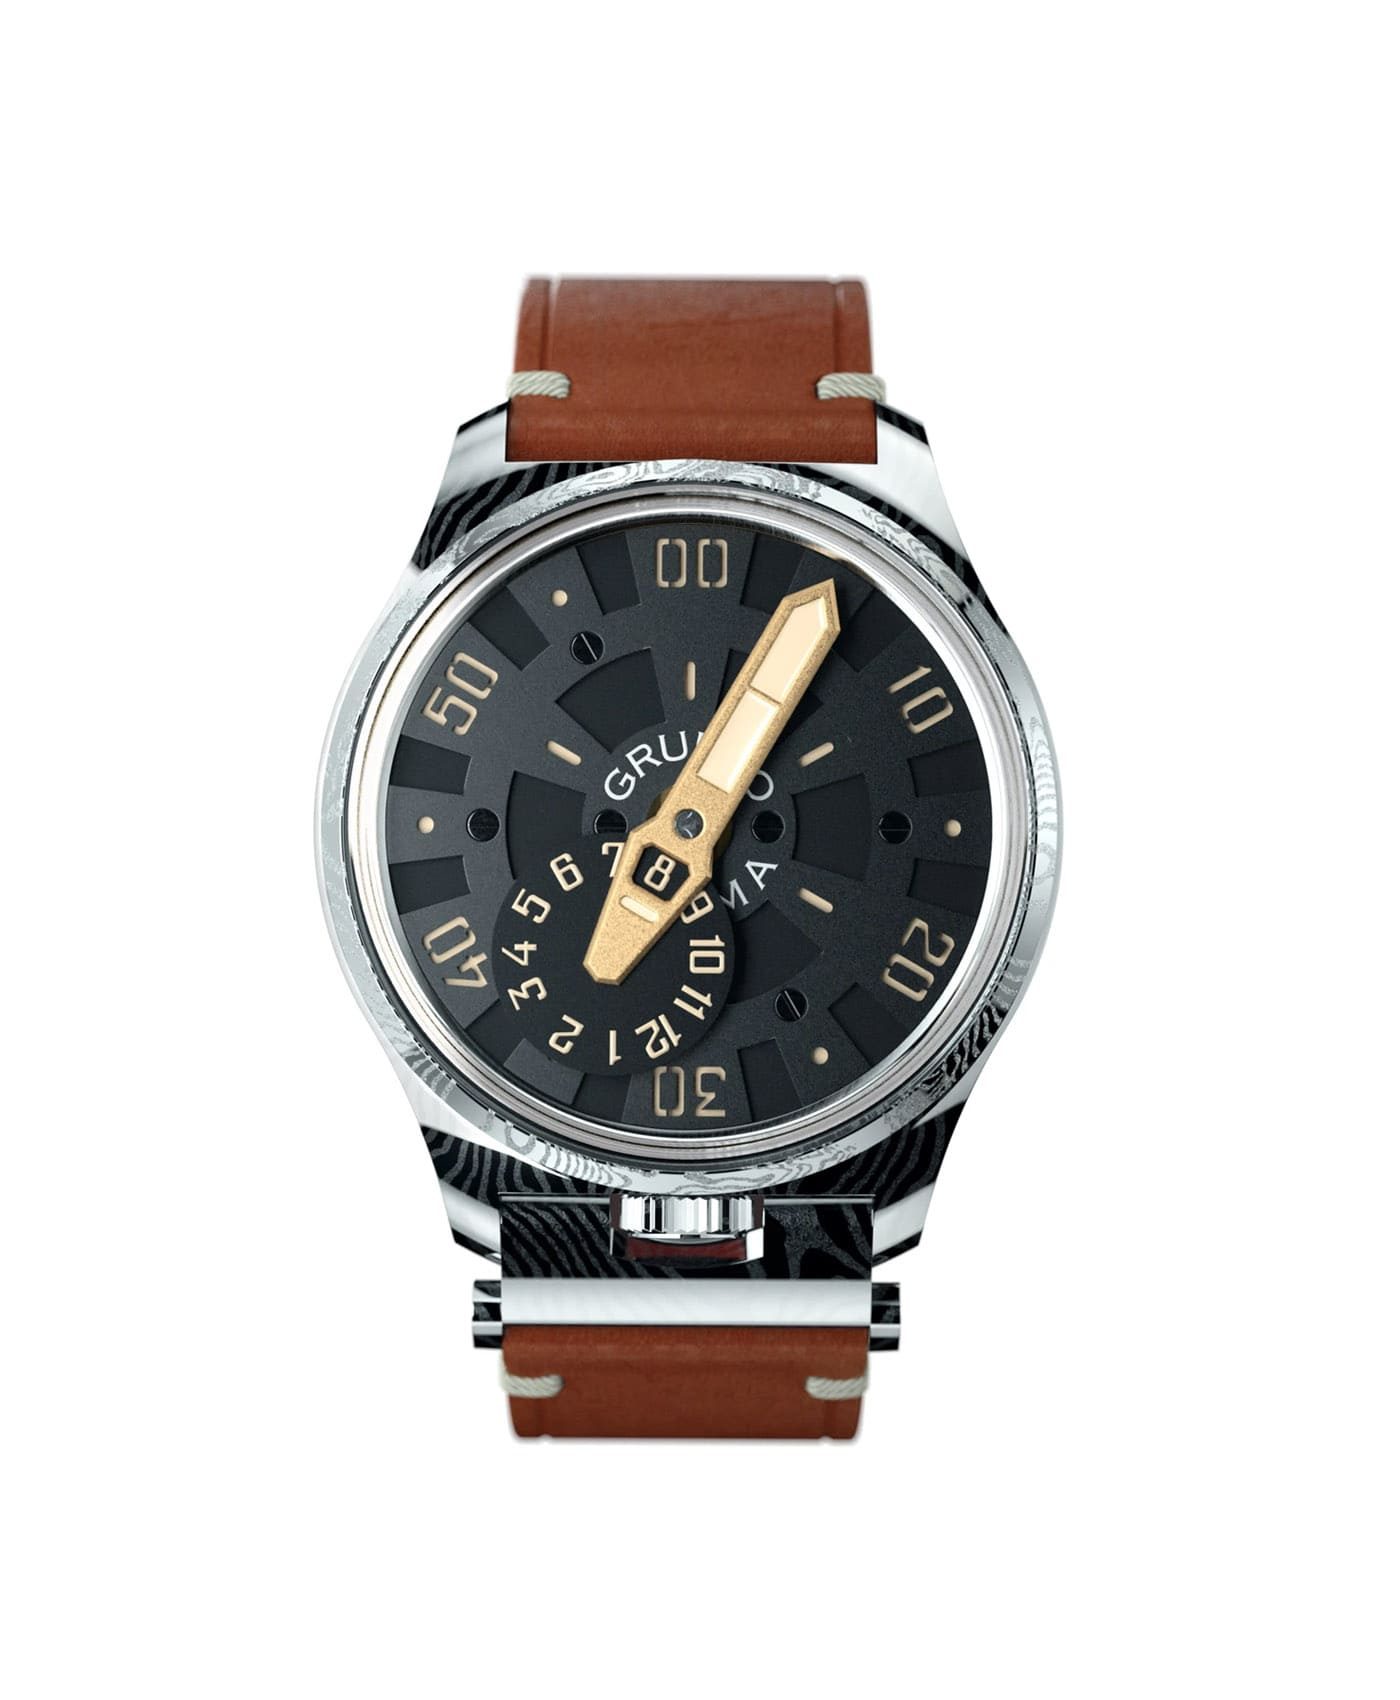 Gruppo Gamma_NEXUS ND-02_front damascus steel watch case